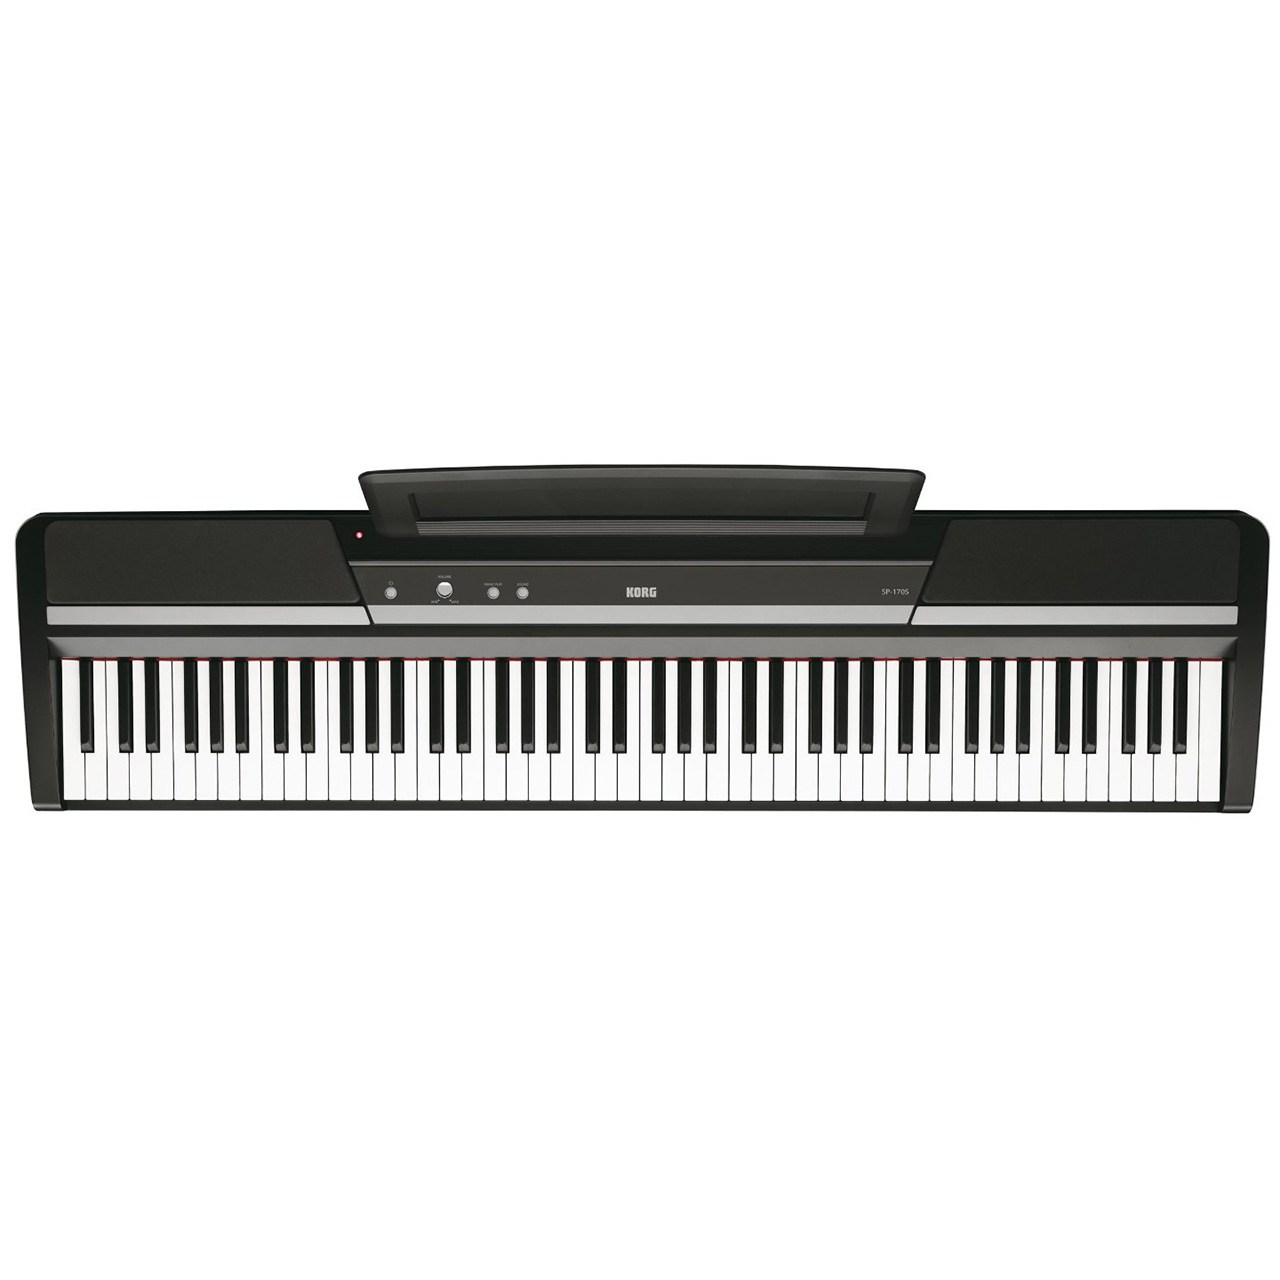 پیانو دیجیتال کرگ مدل SP-170S